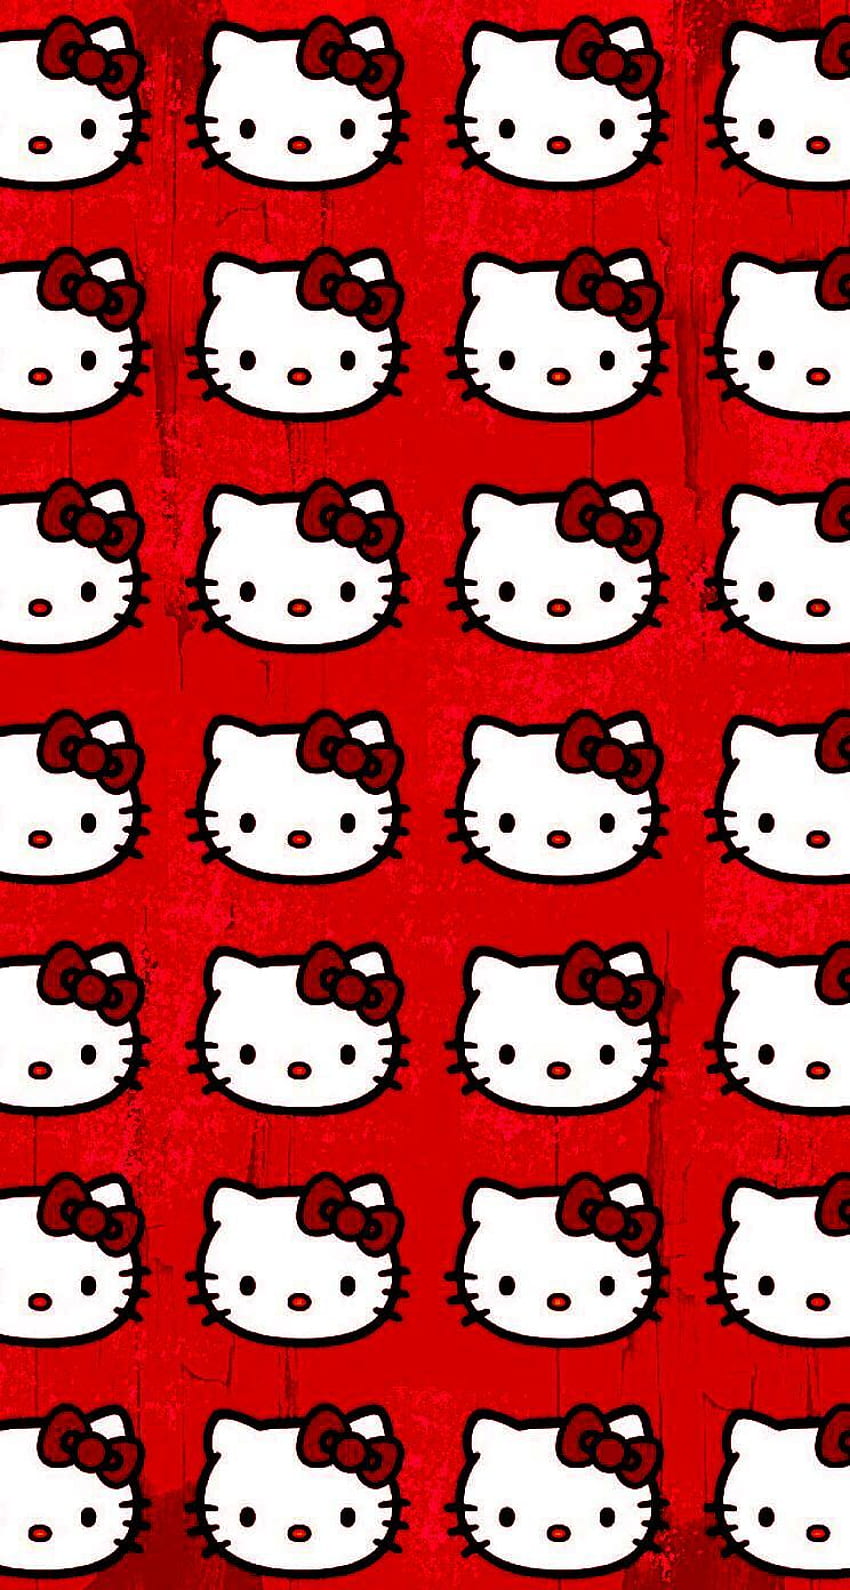 Muốn có một hình nền đẹp và độc đáo với Hello Kitty? Hãy tải ngay những mẫu hình nền Hello Kitty nền đỏ đầy sinh động và tạo ra một diện mạo khác biệt cho màn hình điện thoại của bạn.